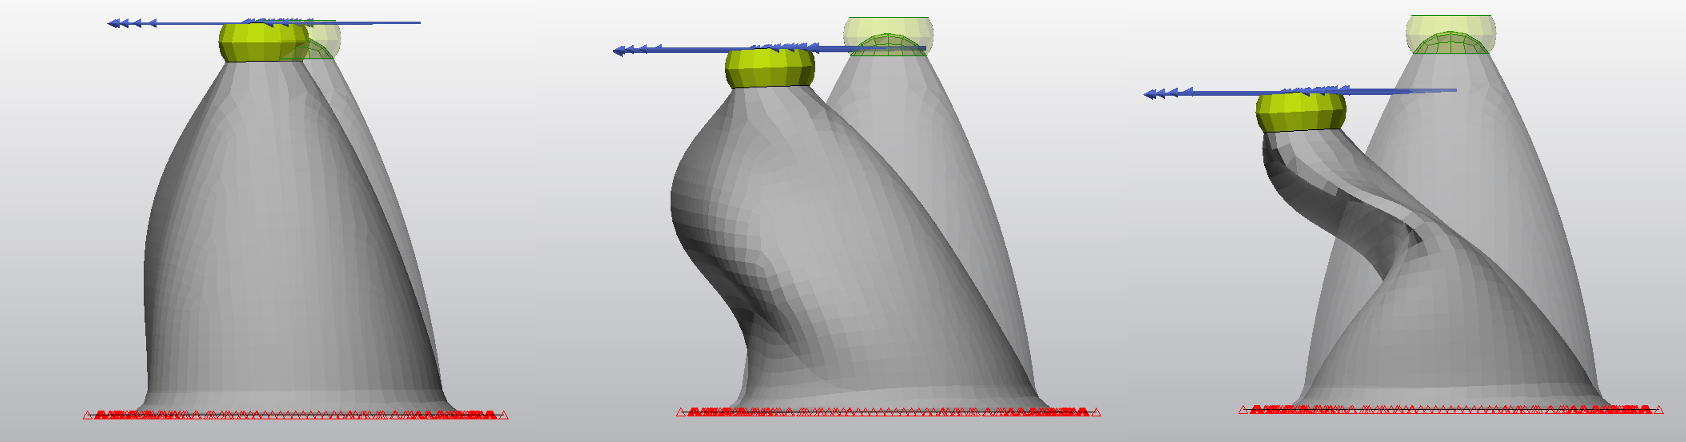 Buckling elastomer shell simulation